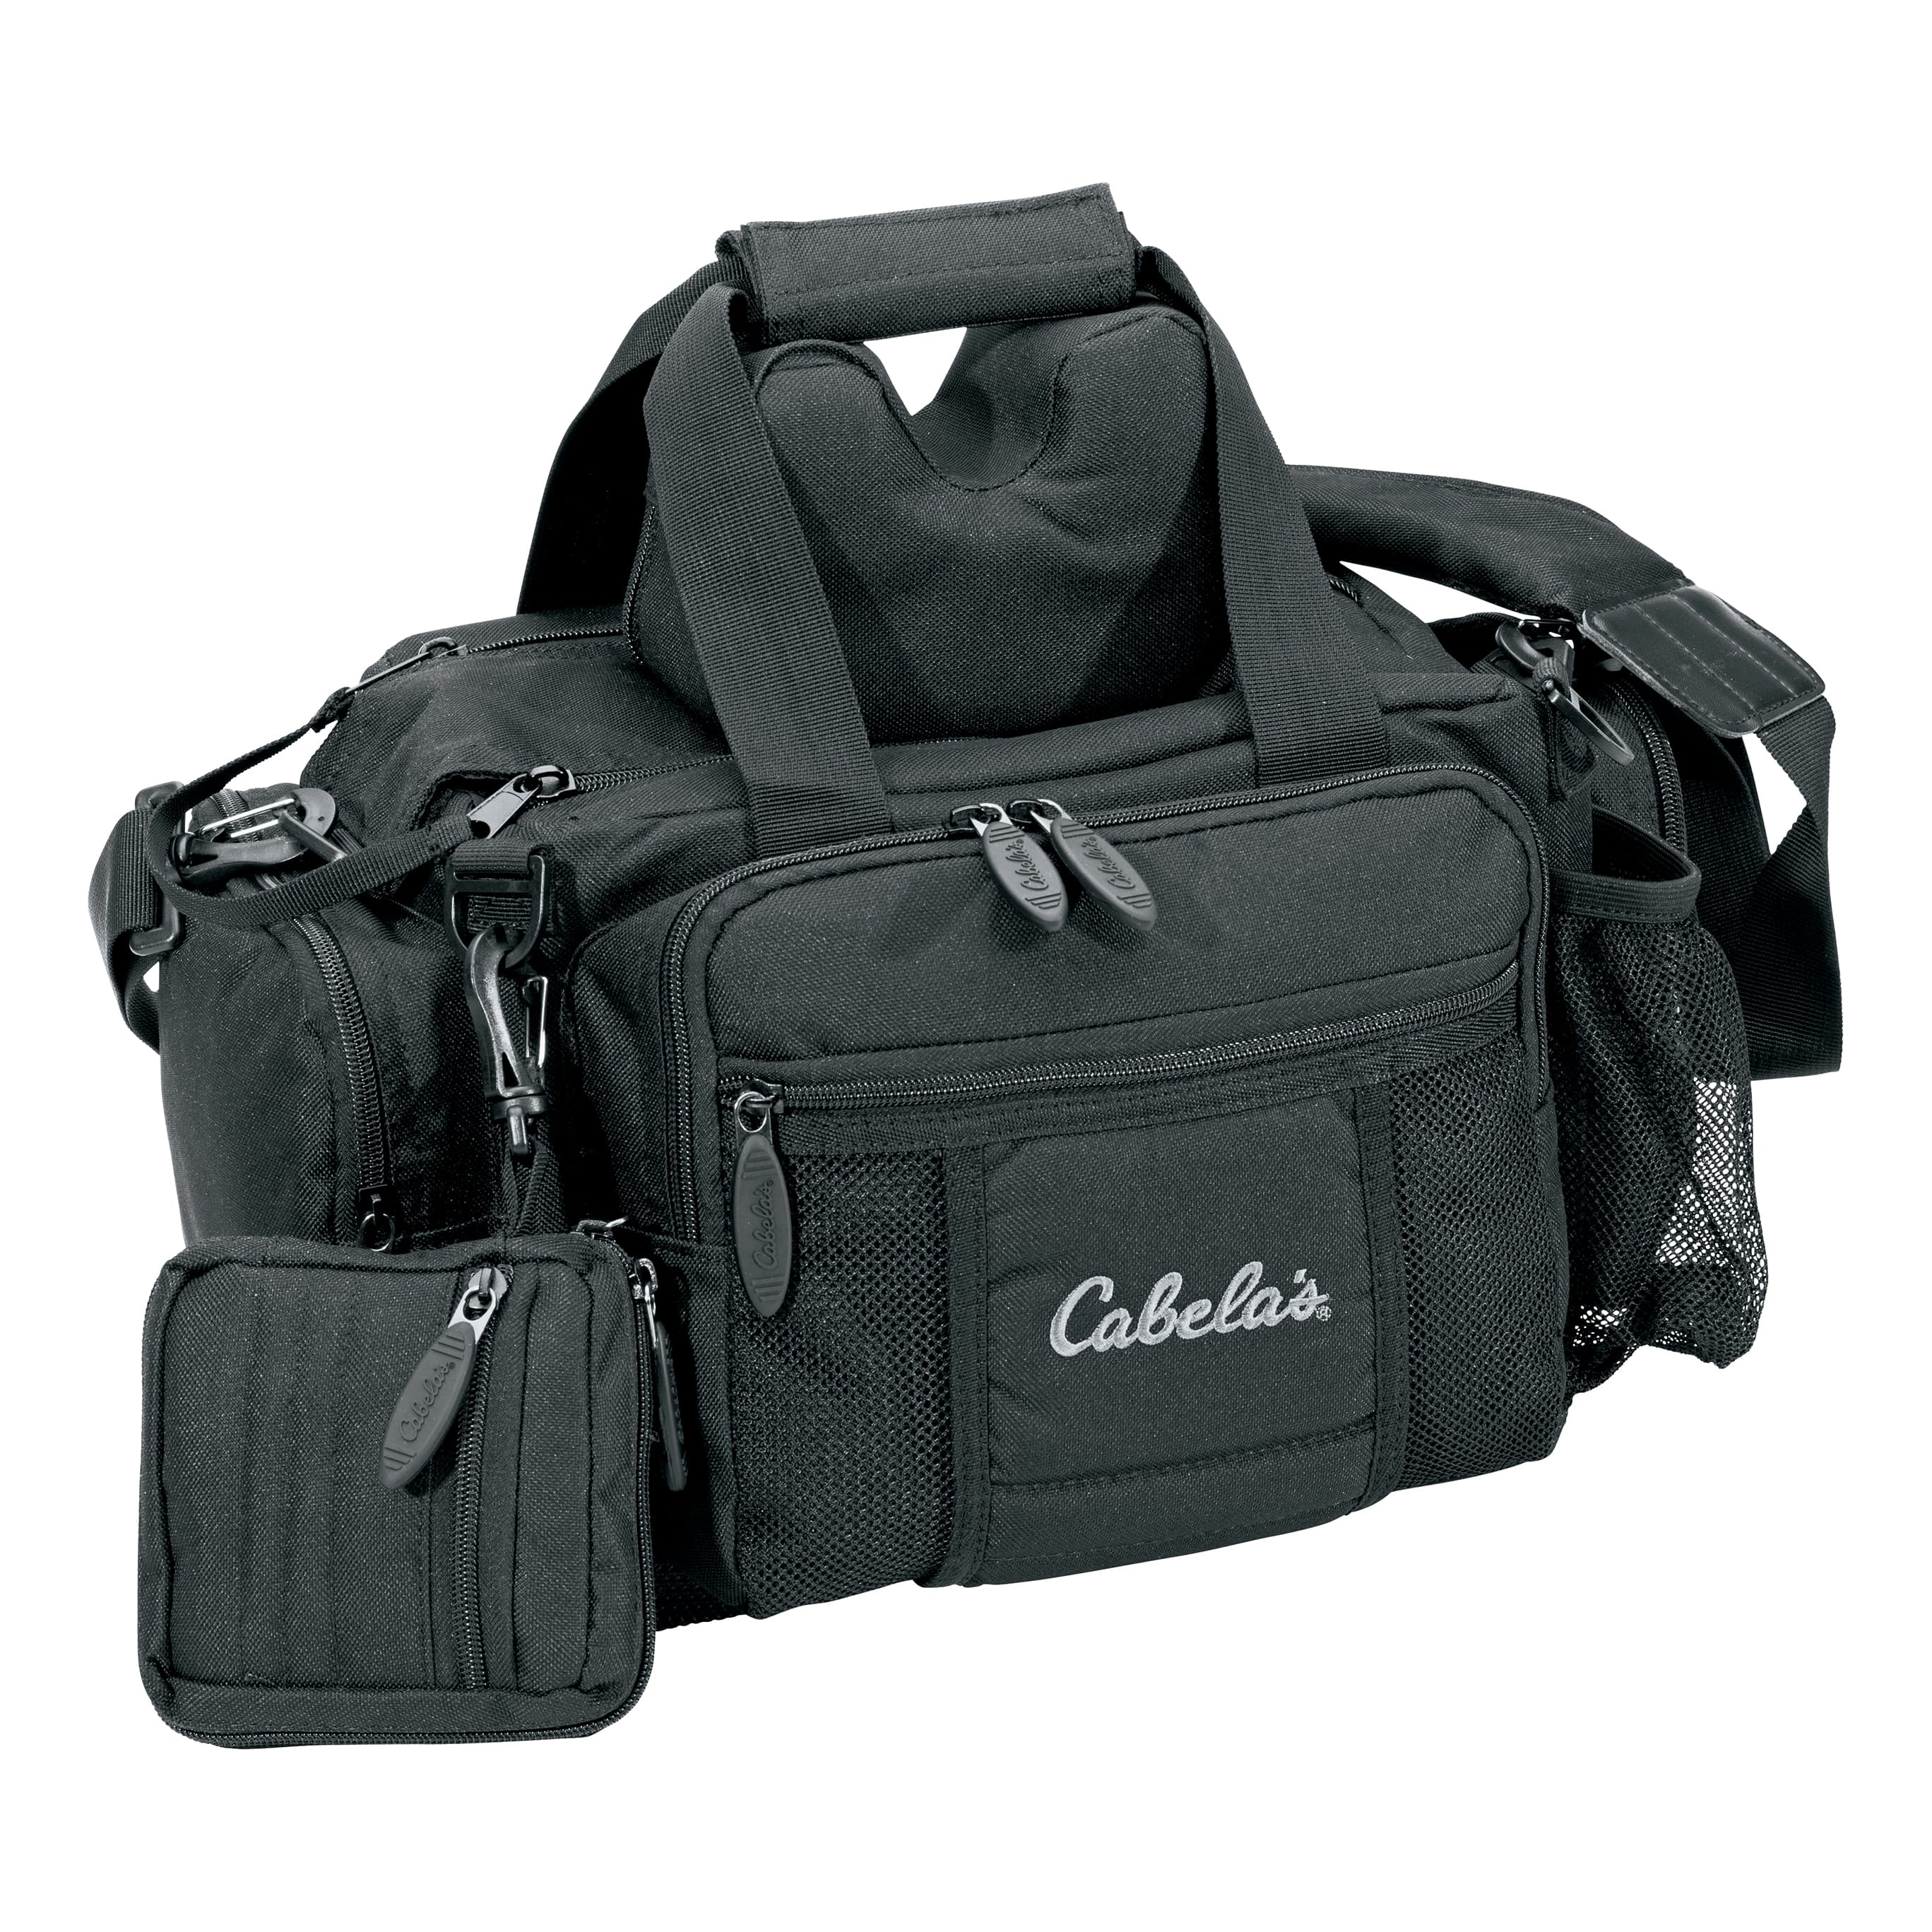 Cabela's Range Bag